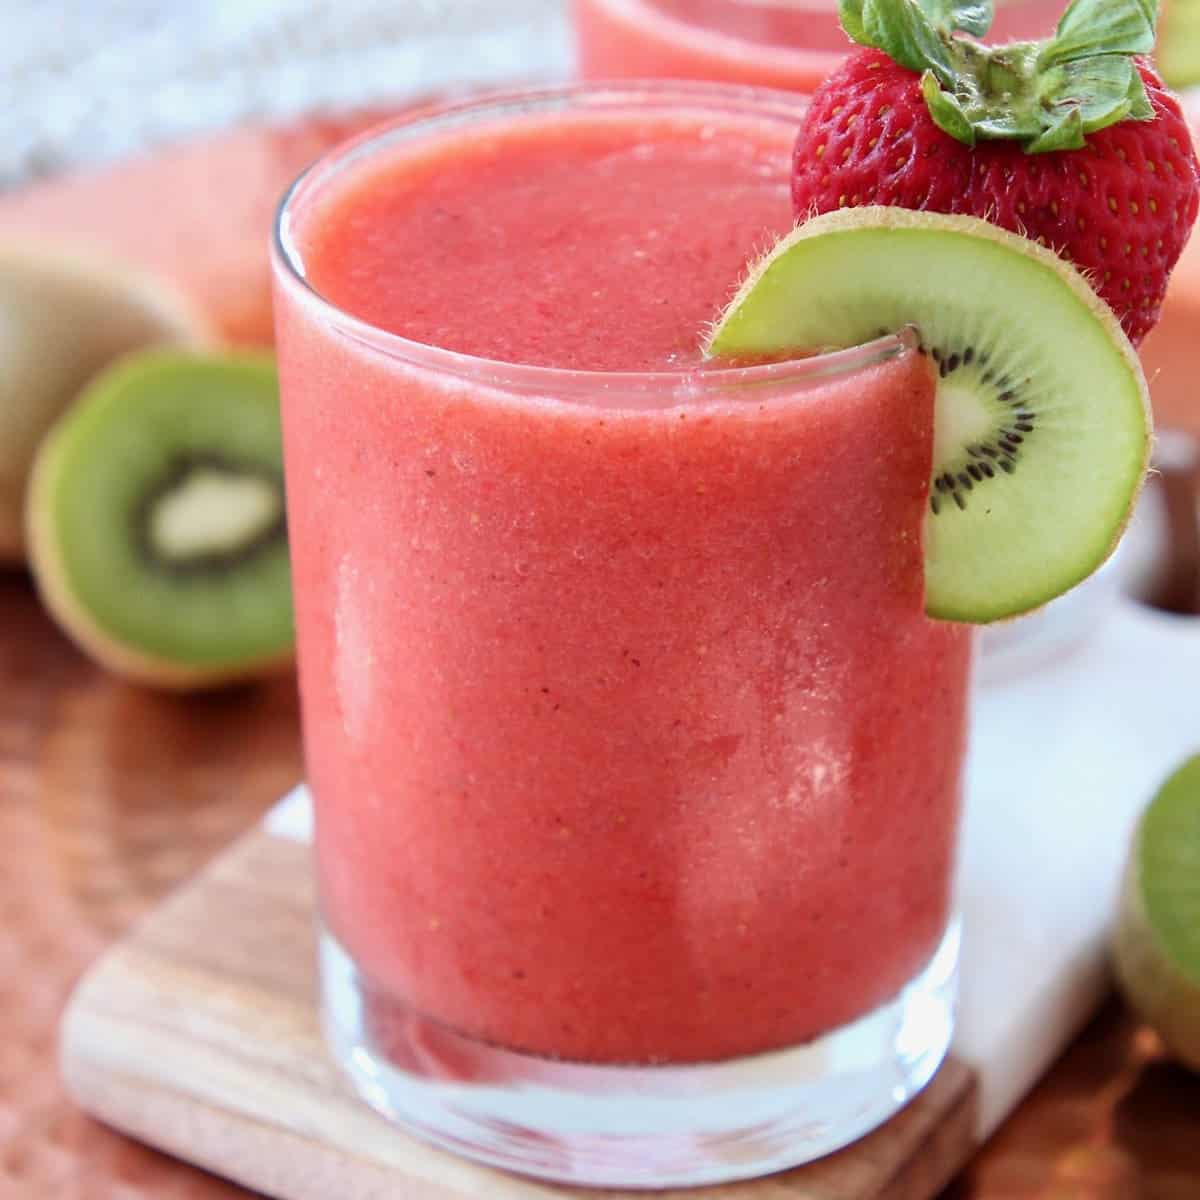 Strawberry Kiwi Slushie - Easy 5 Minute Recipe | WhitneyBond.com